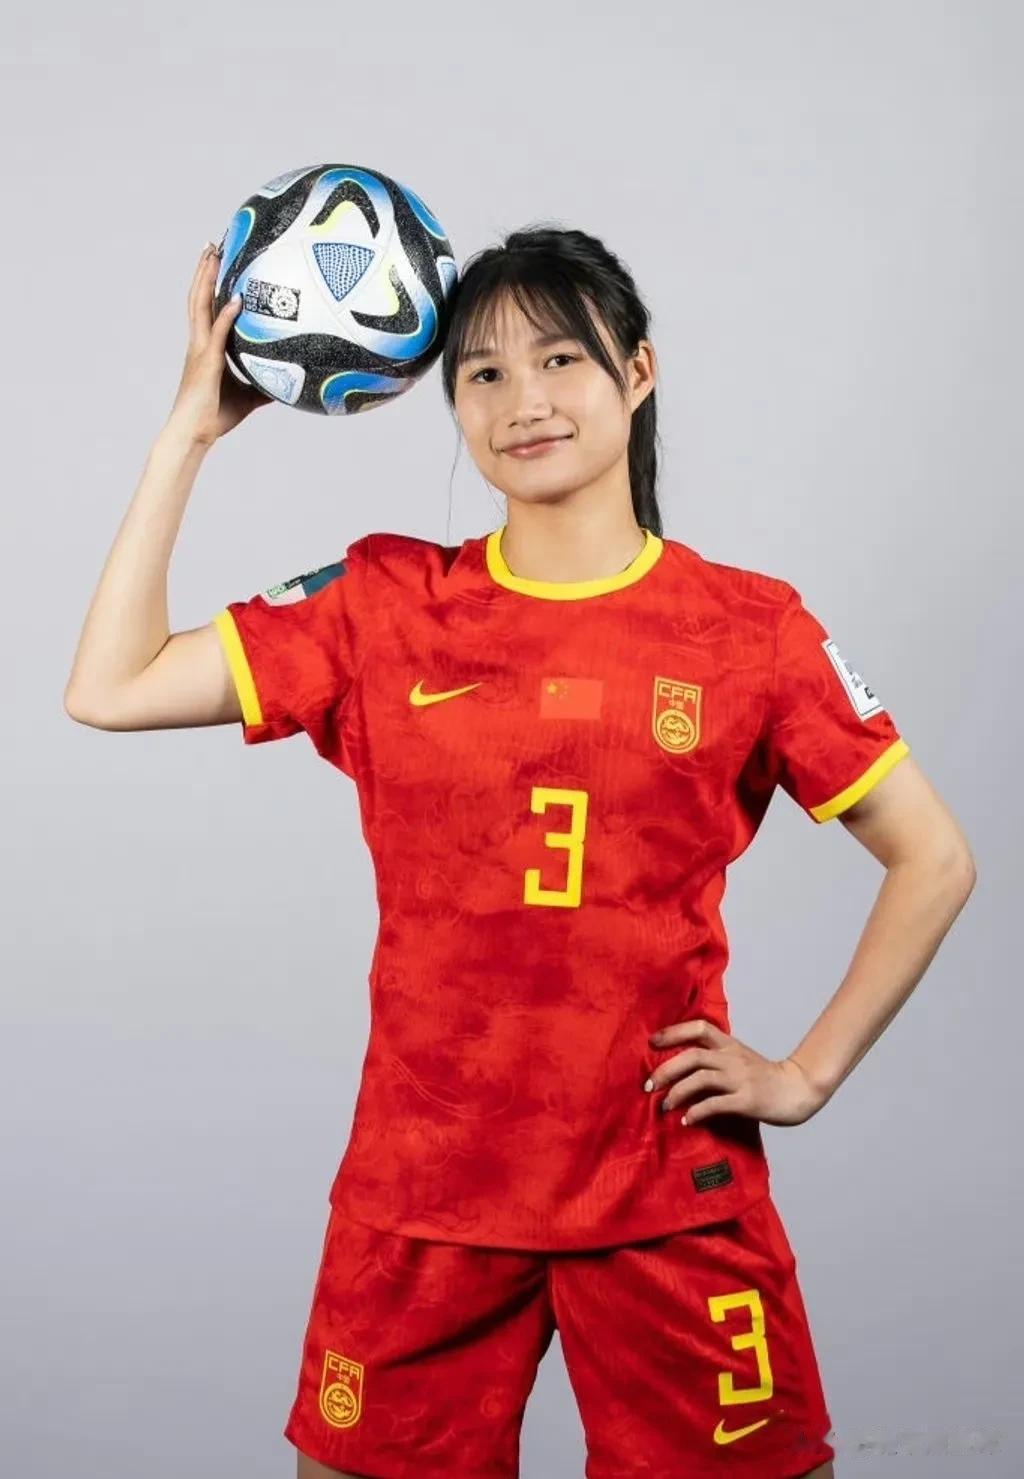 插播一条足球，给中国姑娘加油！祝中国姑娘22号世界杯首场凯旋！

分享一下姑娘们